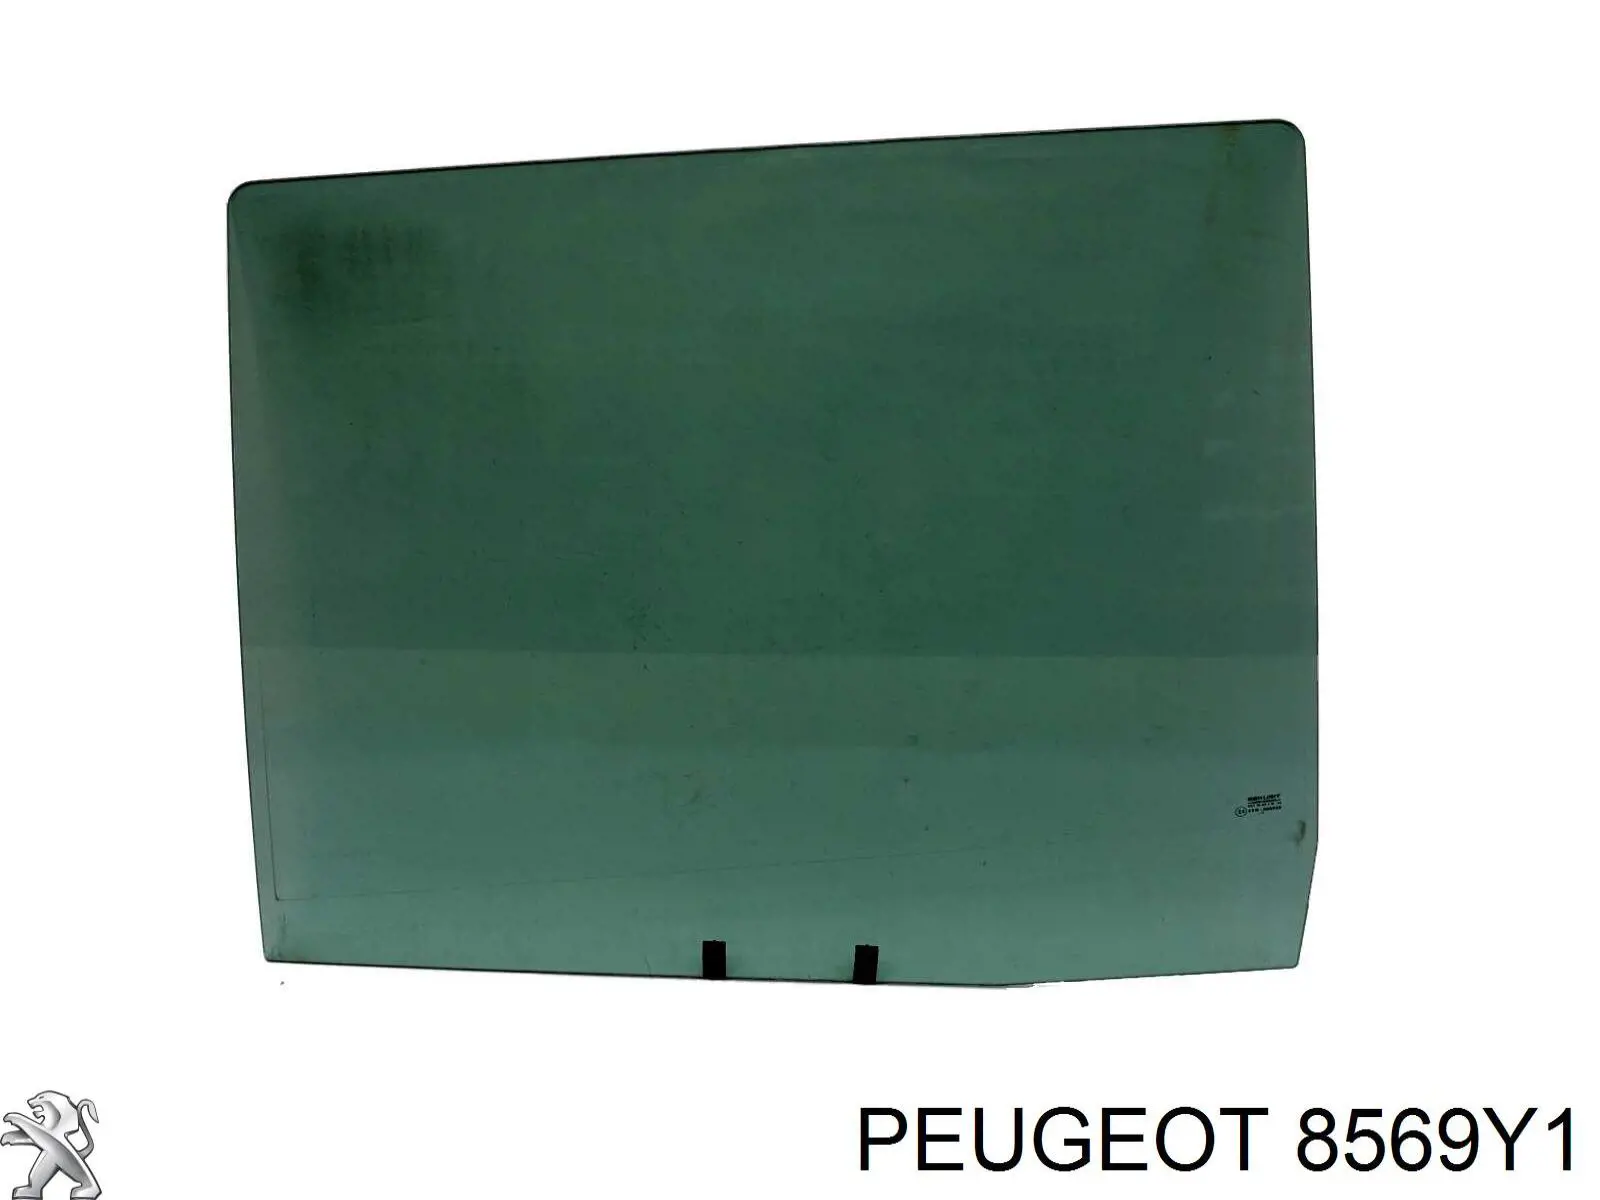 8569Y1 Peugeot/Citroen vidro da porta lateral deslizante esquerda